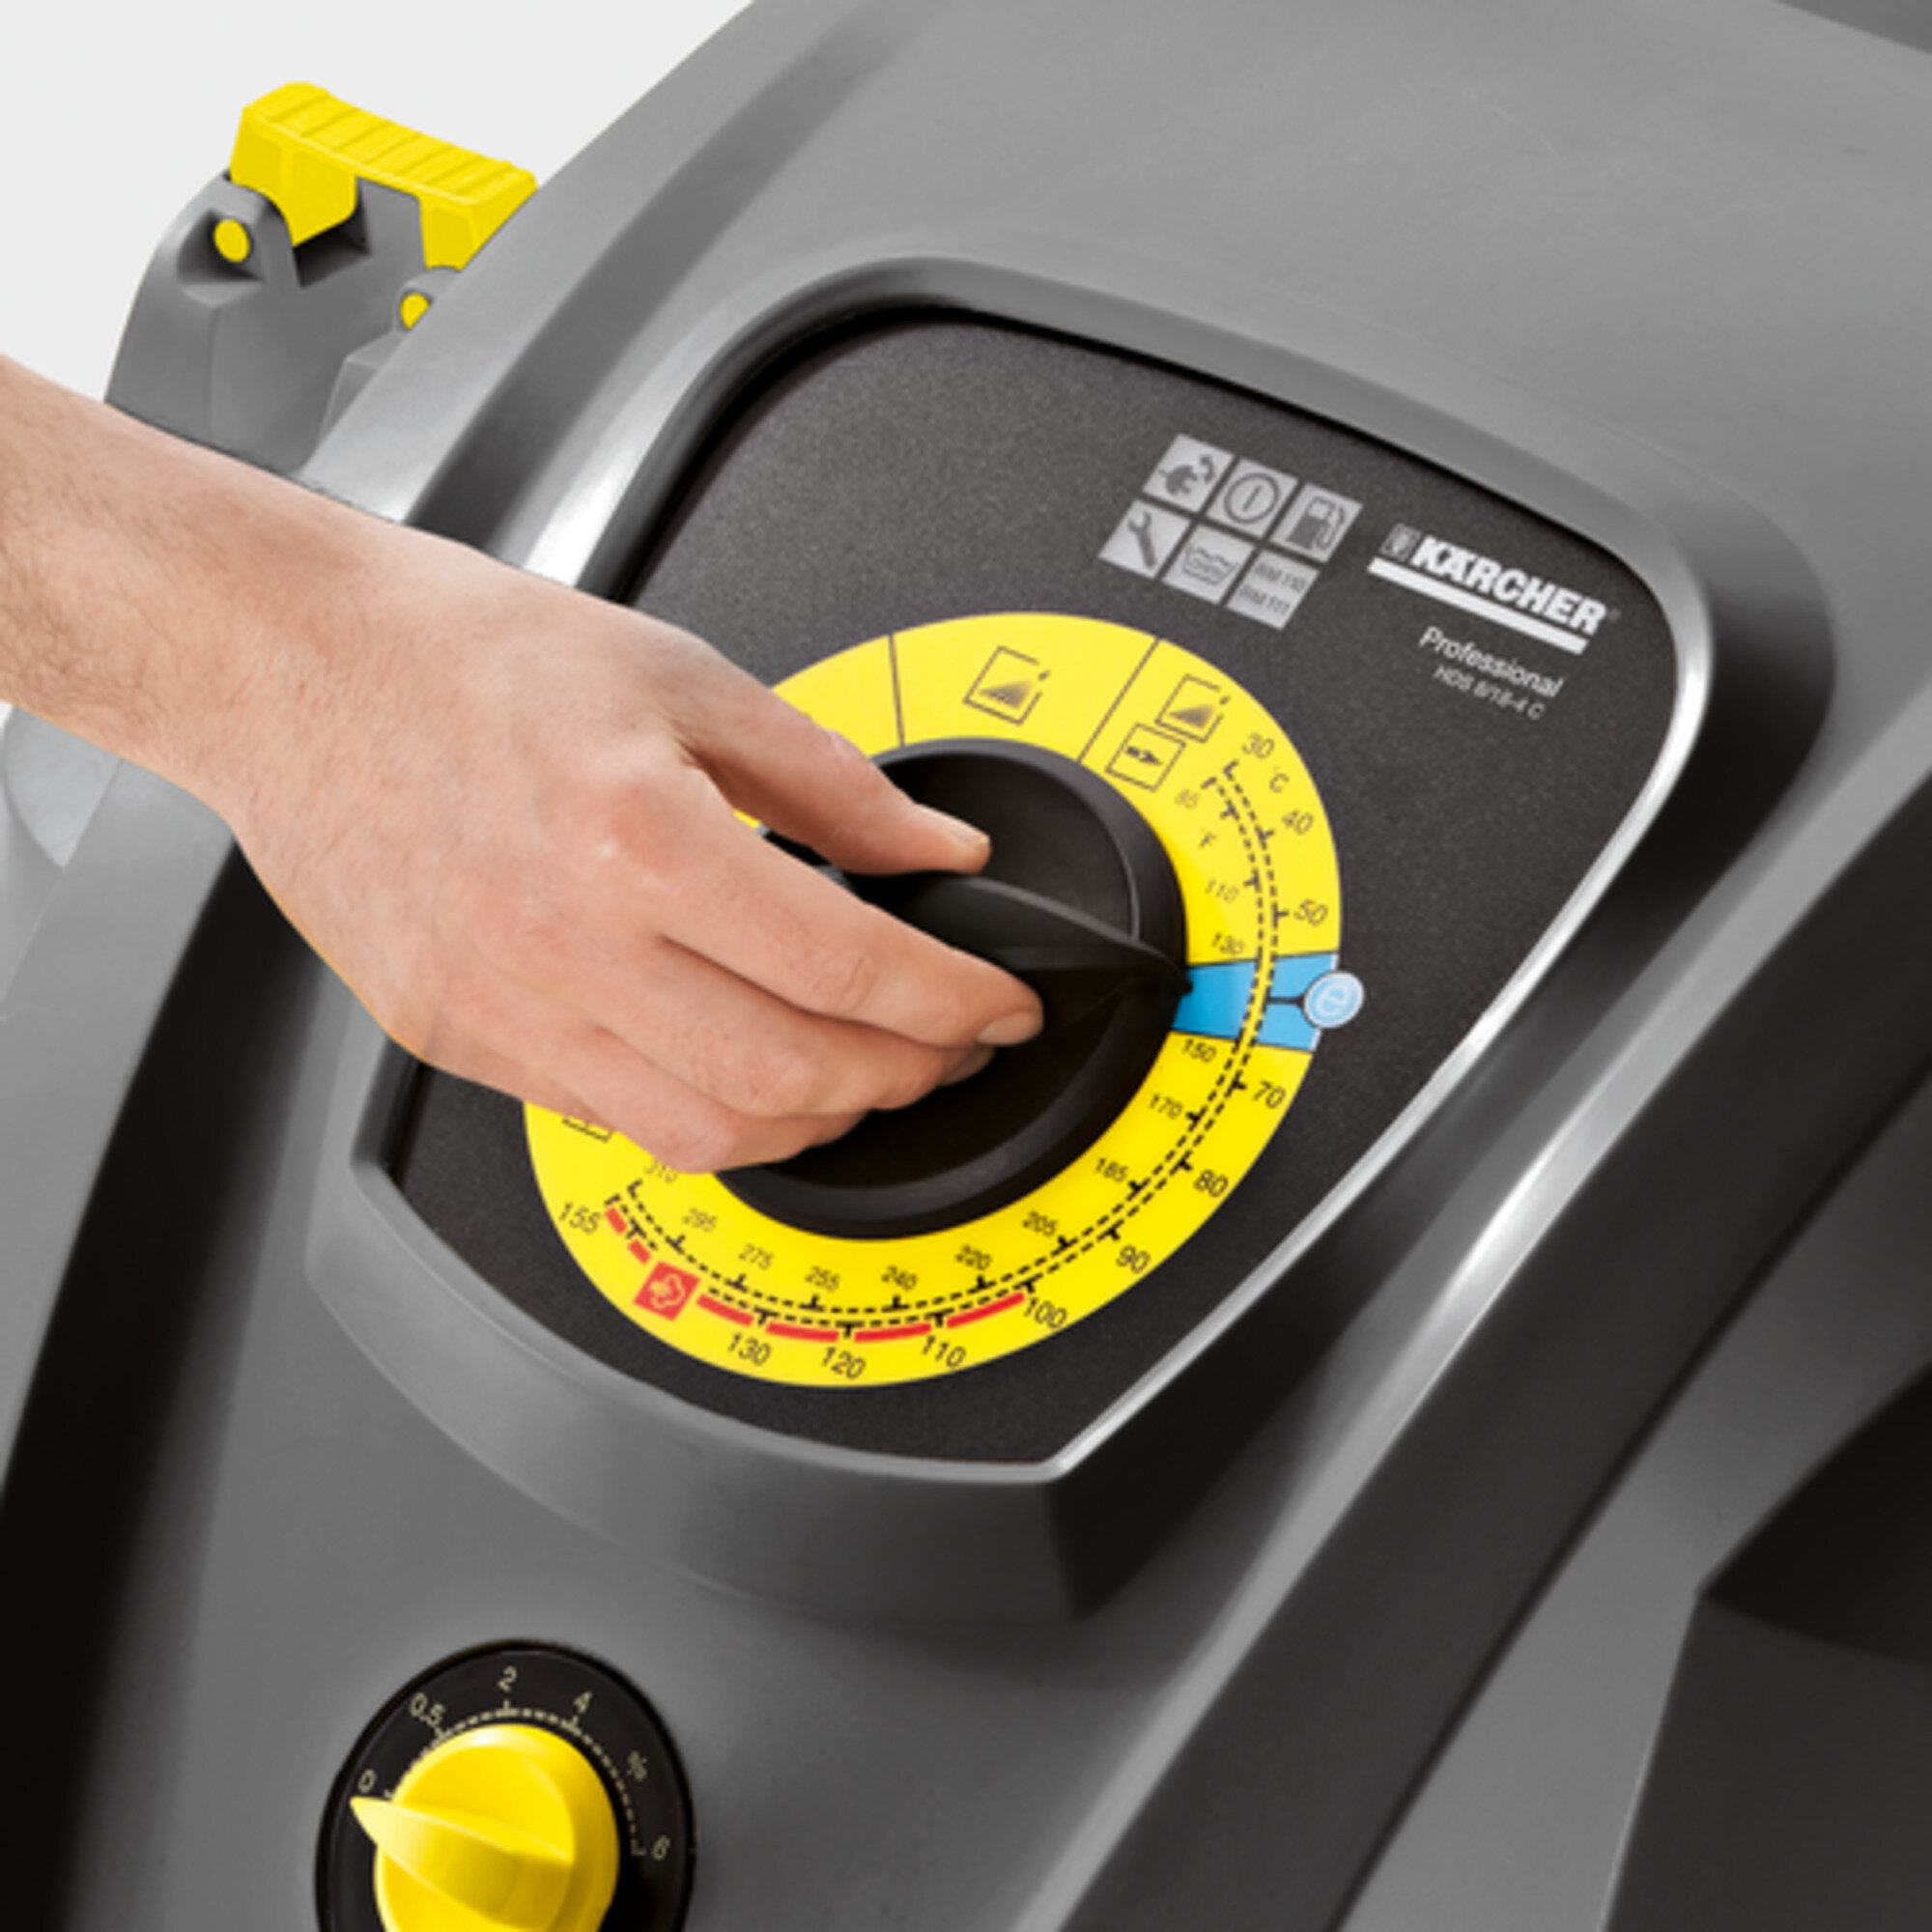 Limpiadora de alta presión HDS 8/18-4 C : Rentabilidad